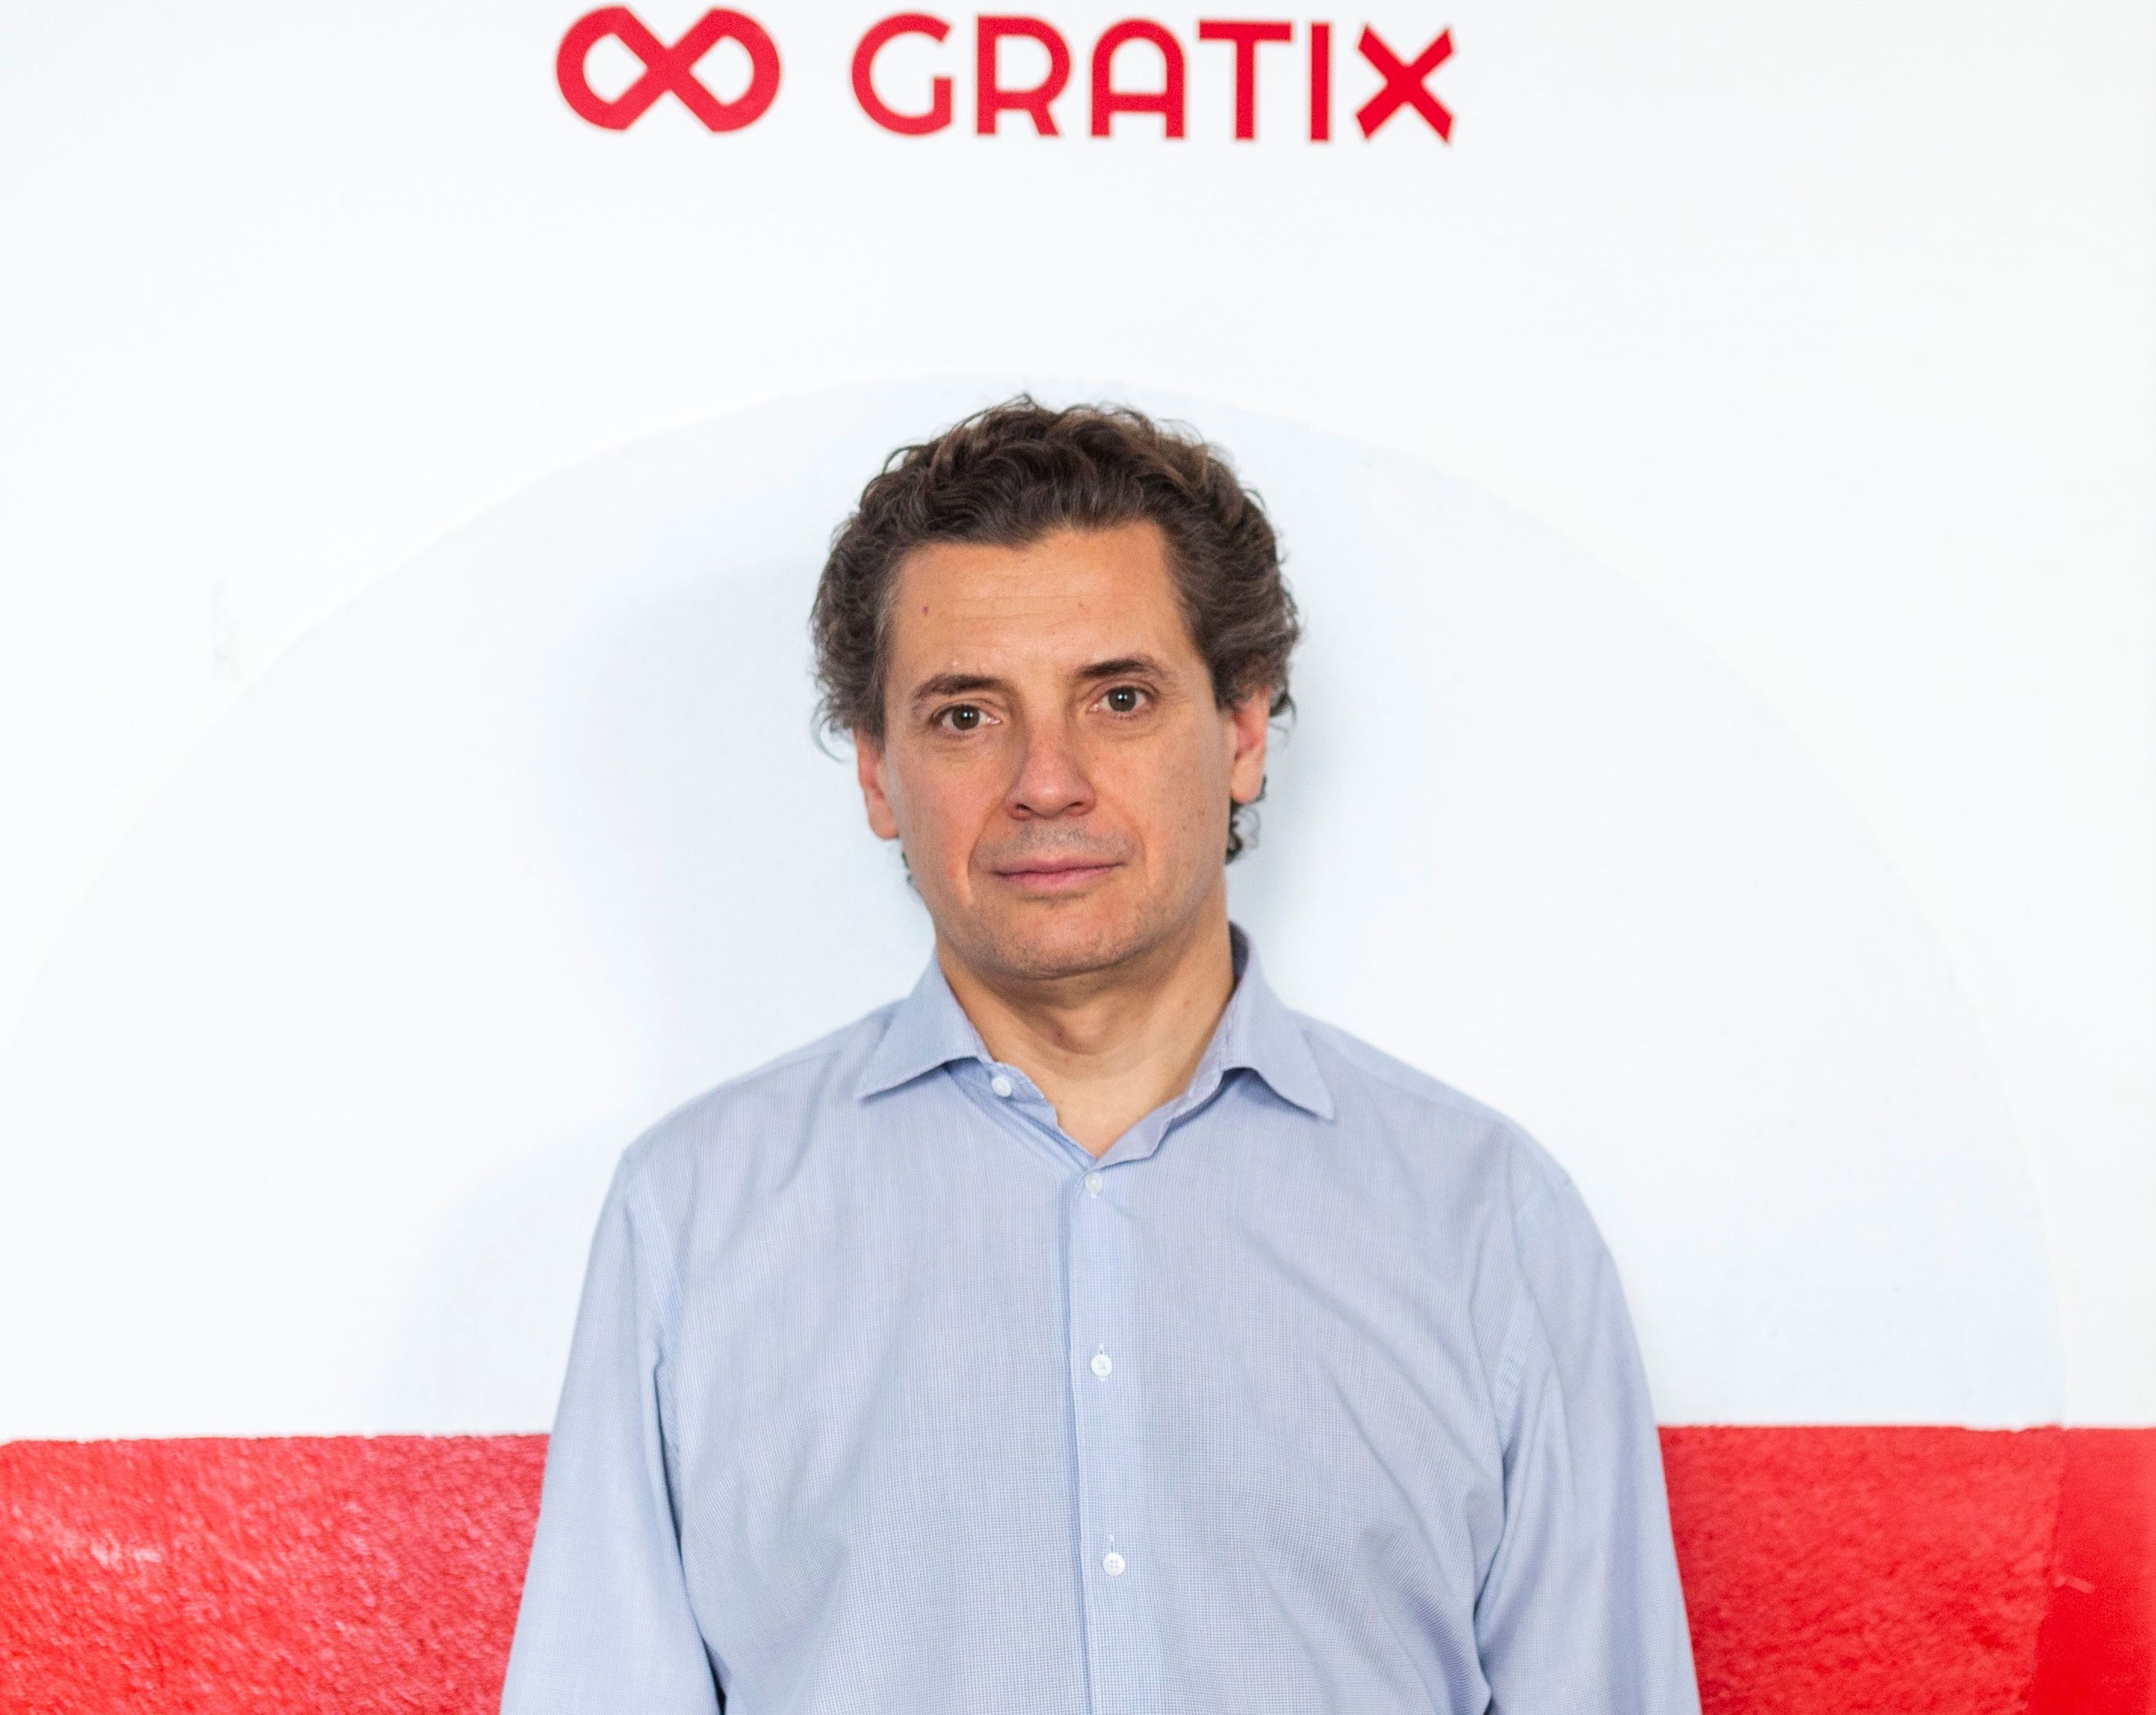 José María García, exdirectivo de Google y creador de Gratix